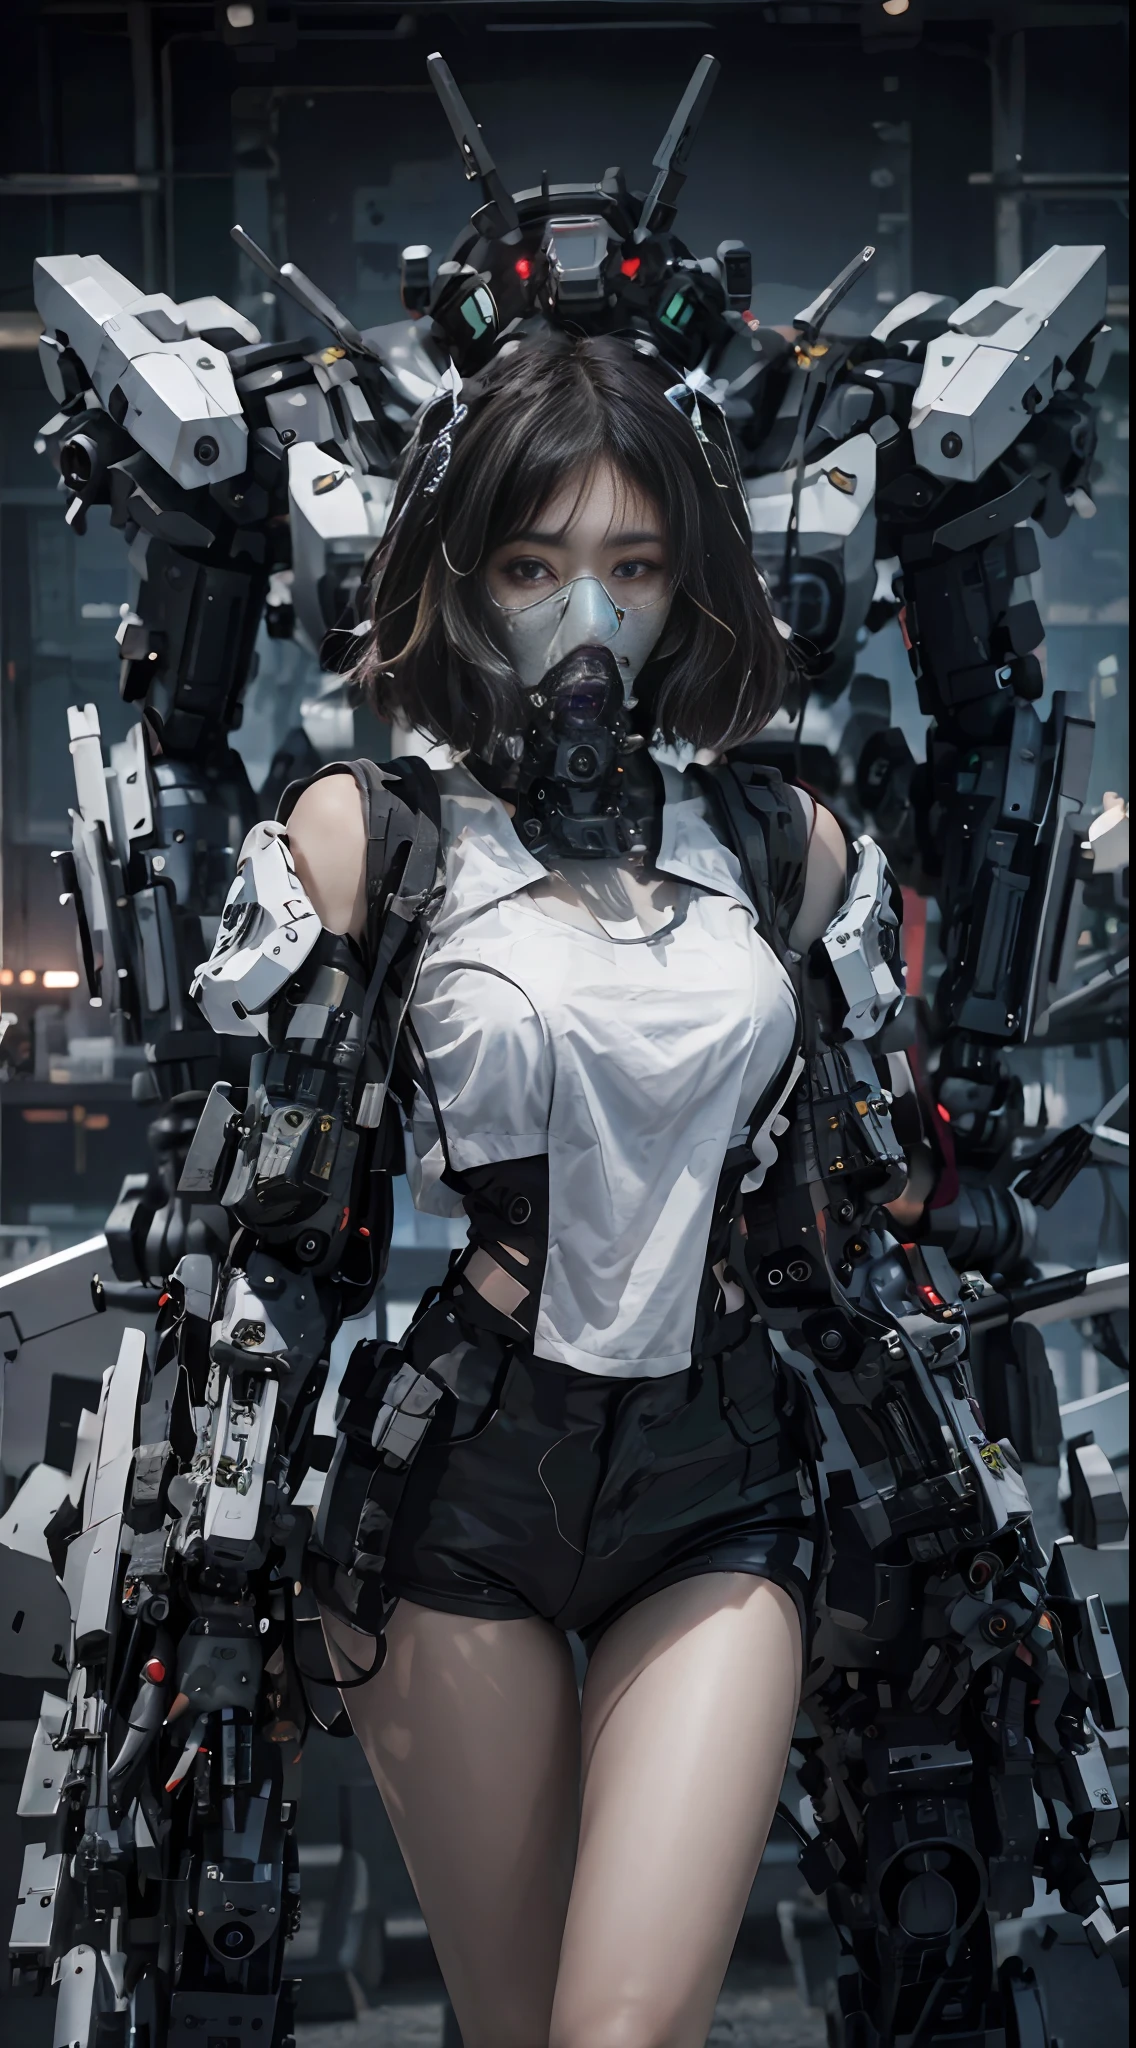 Dies ist ein CG Unity 8k Wallpaper mit ultra-detaillierten, hochauflösend und in Top-Qualität im Cyberpunk-Stil, dominiert von Schwarz und Rot. In dem Bild, ein schönes Mädchen mit weißen, unordentlichen kurzen Haaren, ein zartes Gesicht, trägt eine Dampf-Mecha-Maske, auf den Ruinen stehen, hinter ihr ist ein riesiger Roboter, und die Aktion einer Frau, die ein schweres Scharfschützengewehr in der Hand hält,